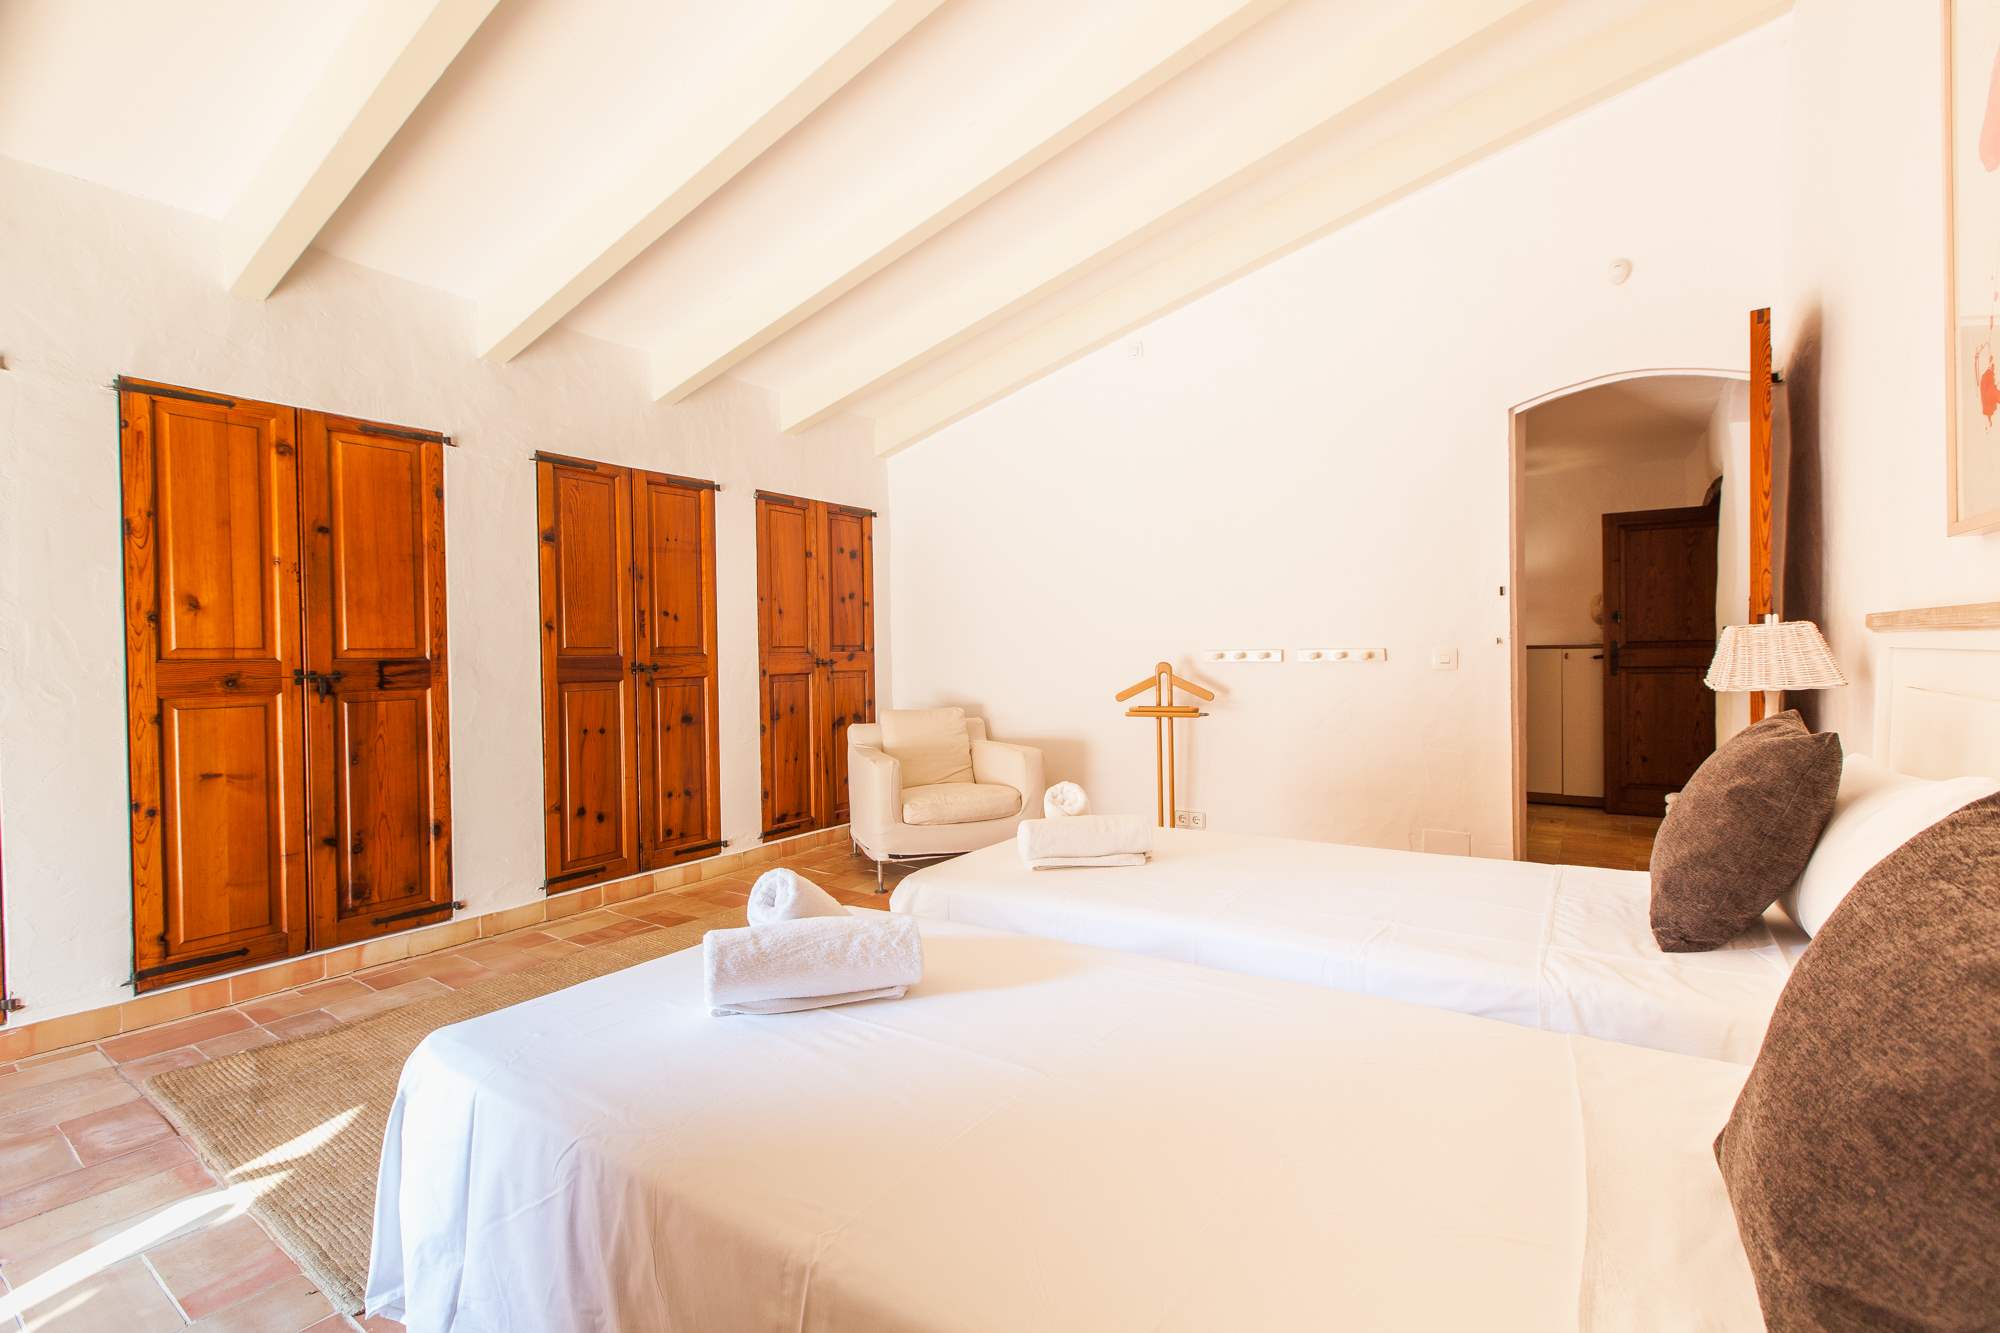 Es Clotal, 2 bedroom, 2 bedroom villa in Pollensa & Puerto Pollensa, Majorca Photo #18